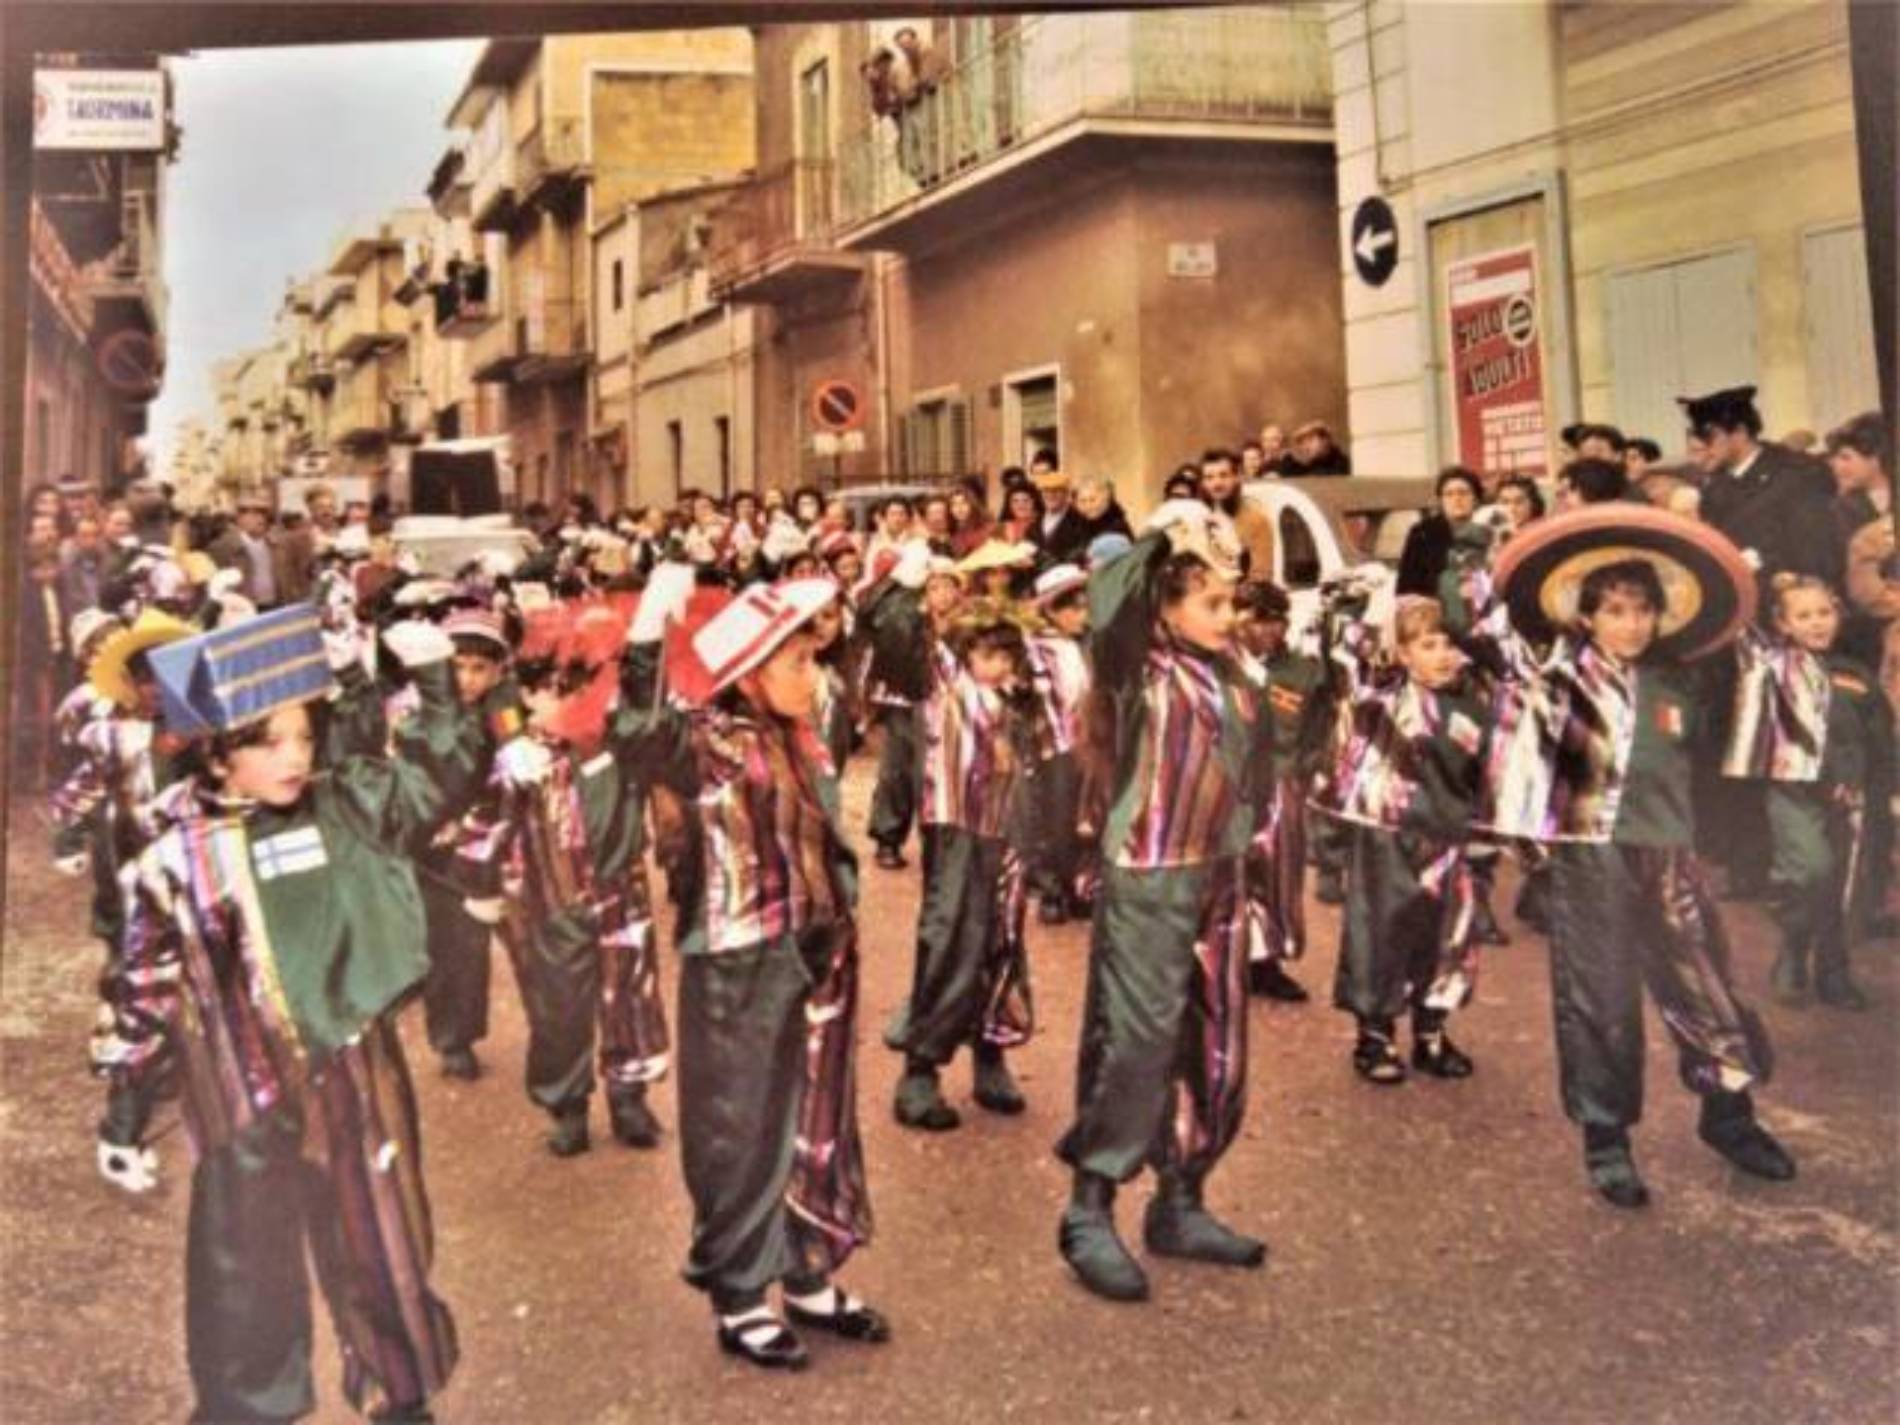 Barrafranca.  Il Carnevale Centro Siculo, una tradizione da mantenere, migliorare o cosa?